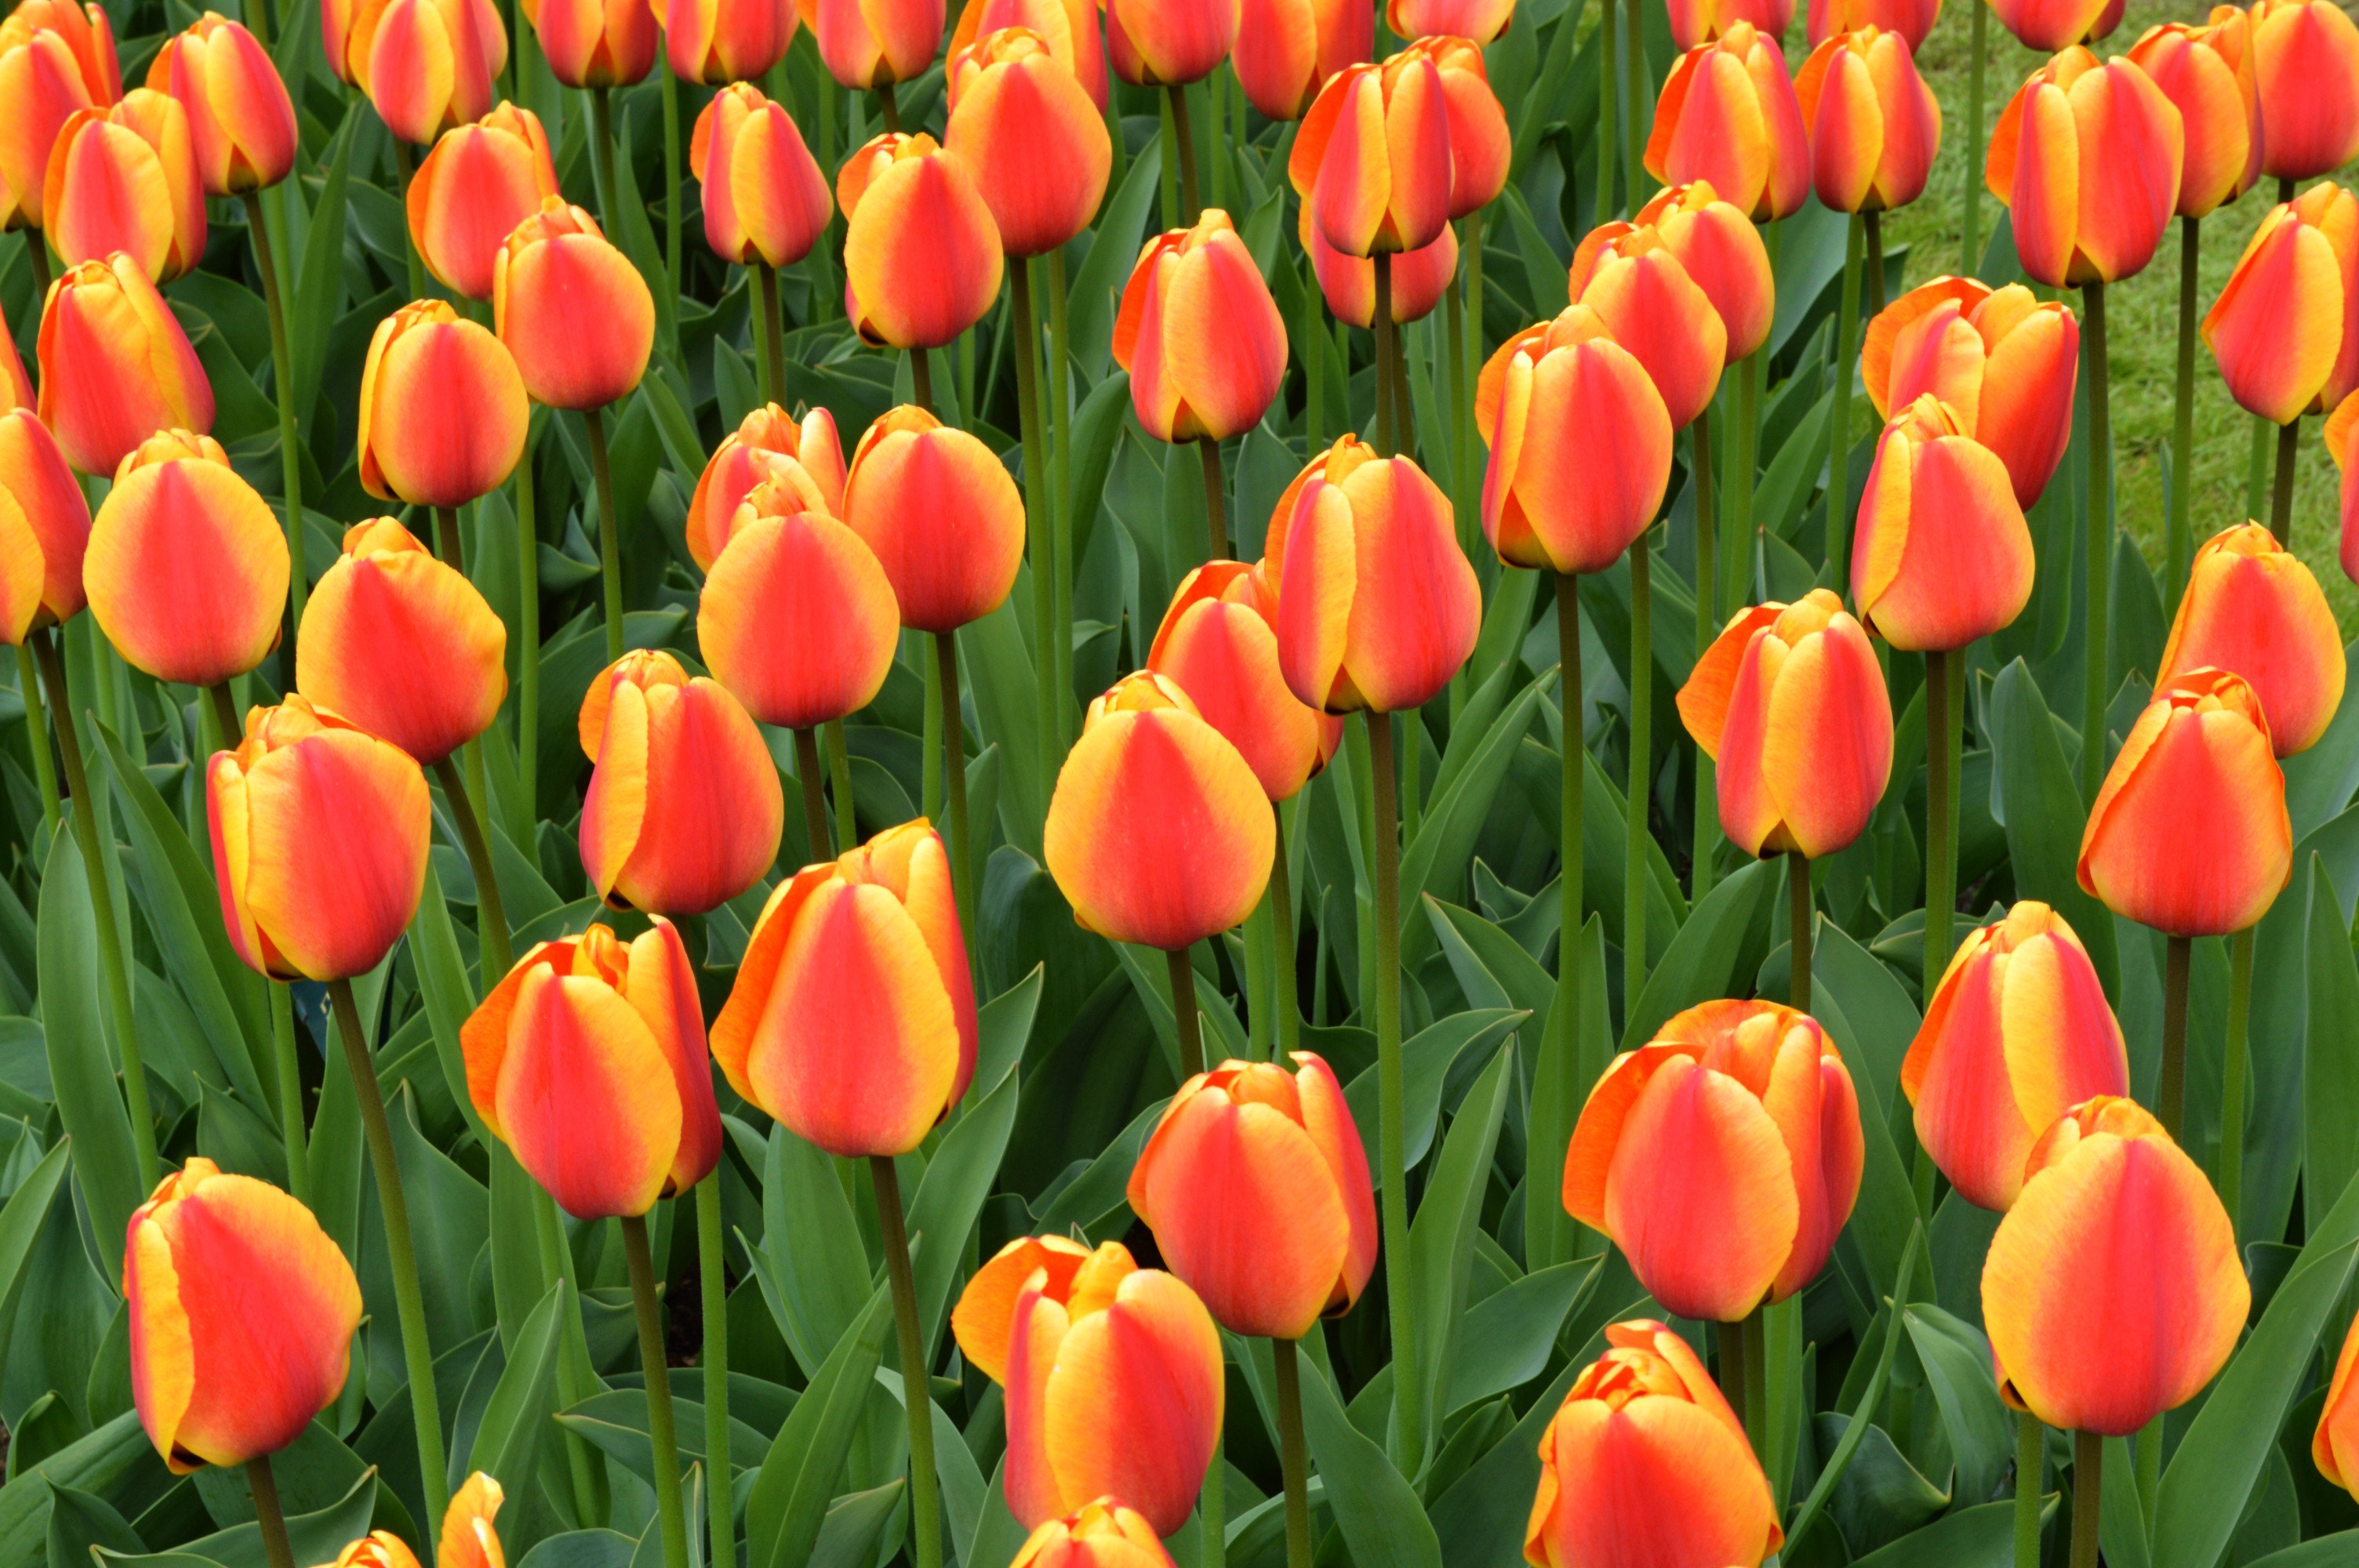 Red yellow tulips photo